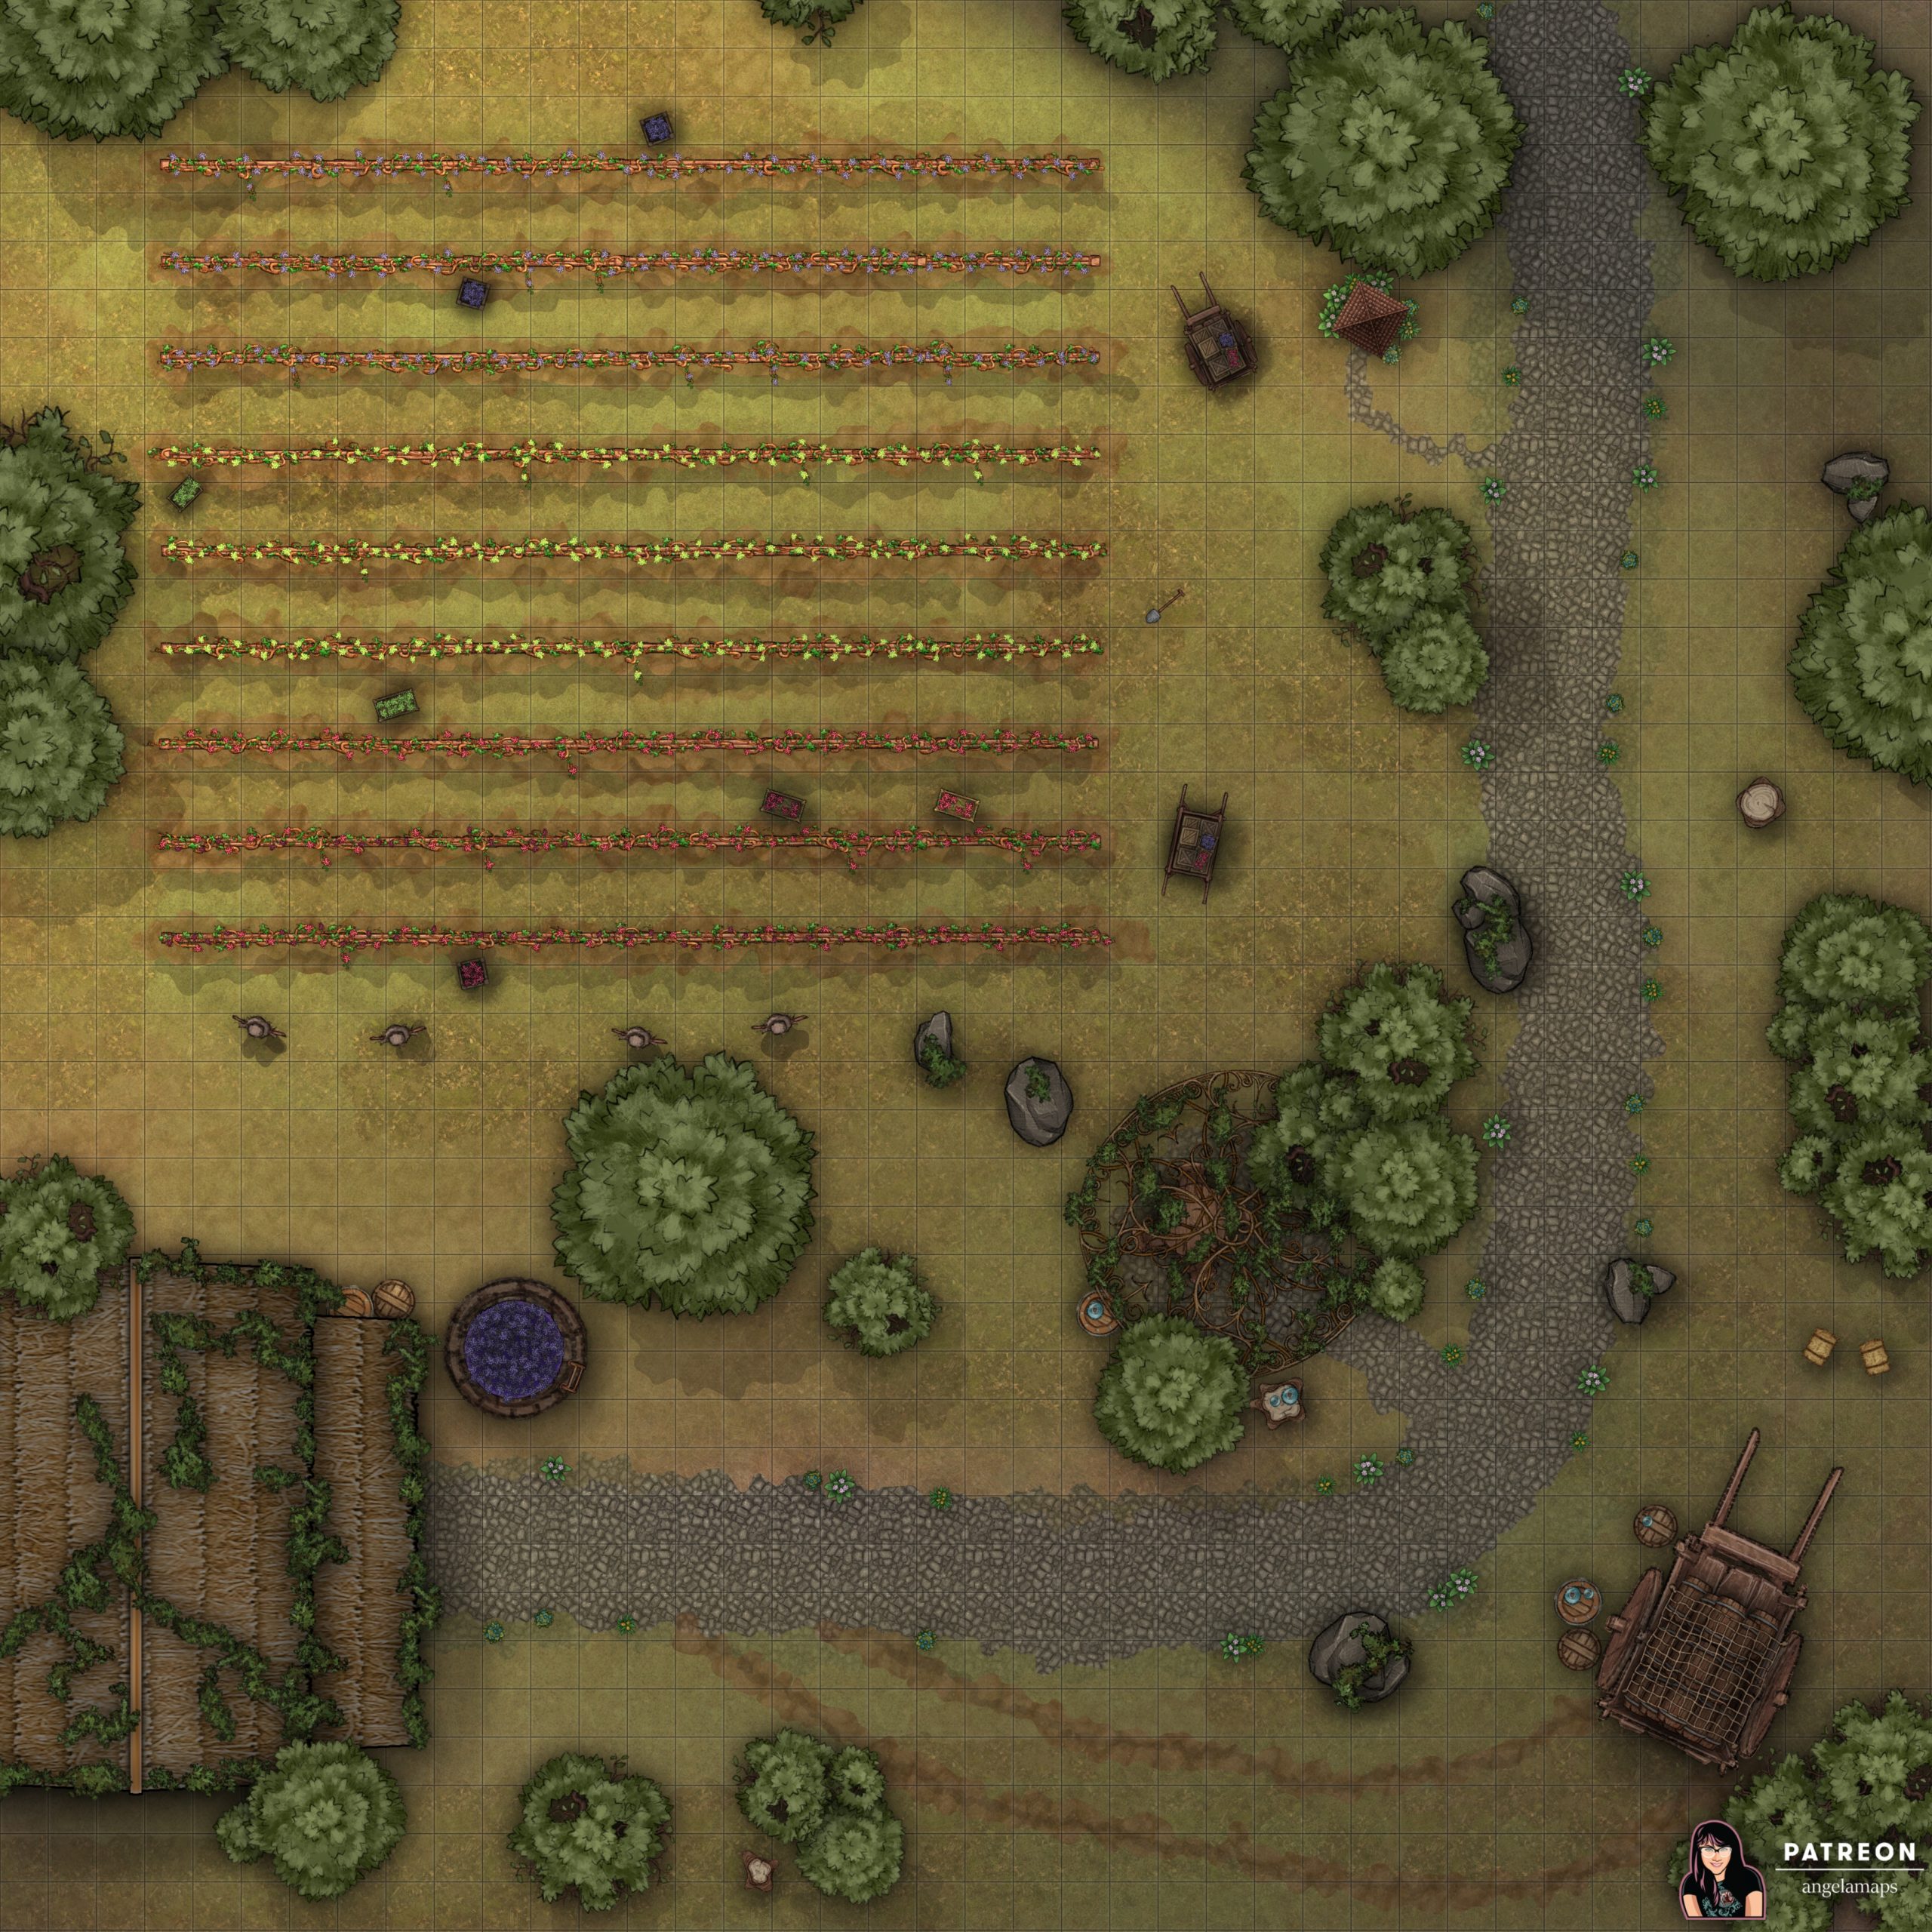 Outdoor vineyard battle map for D&D